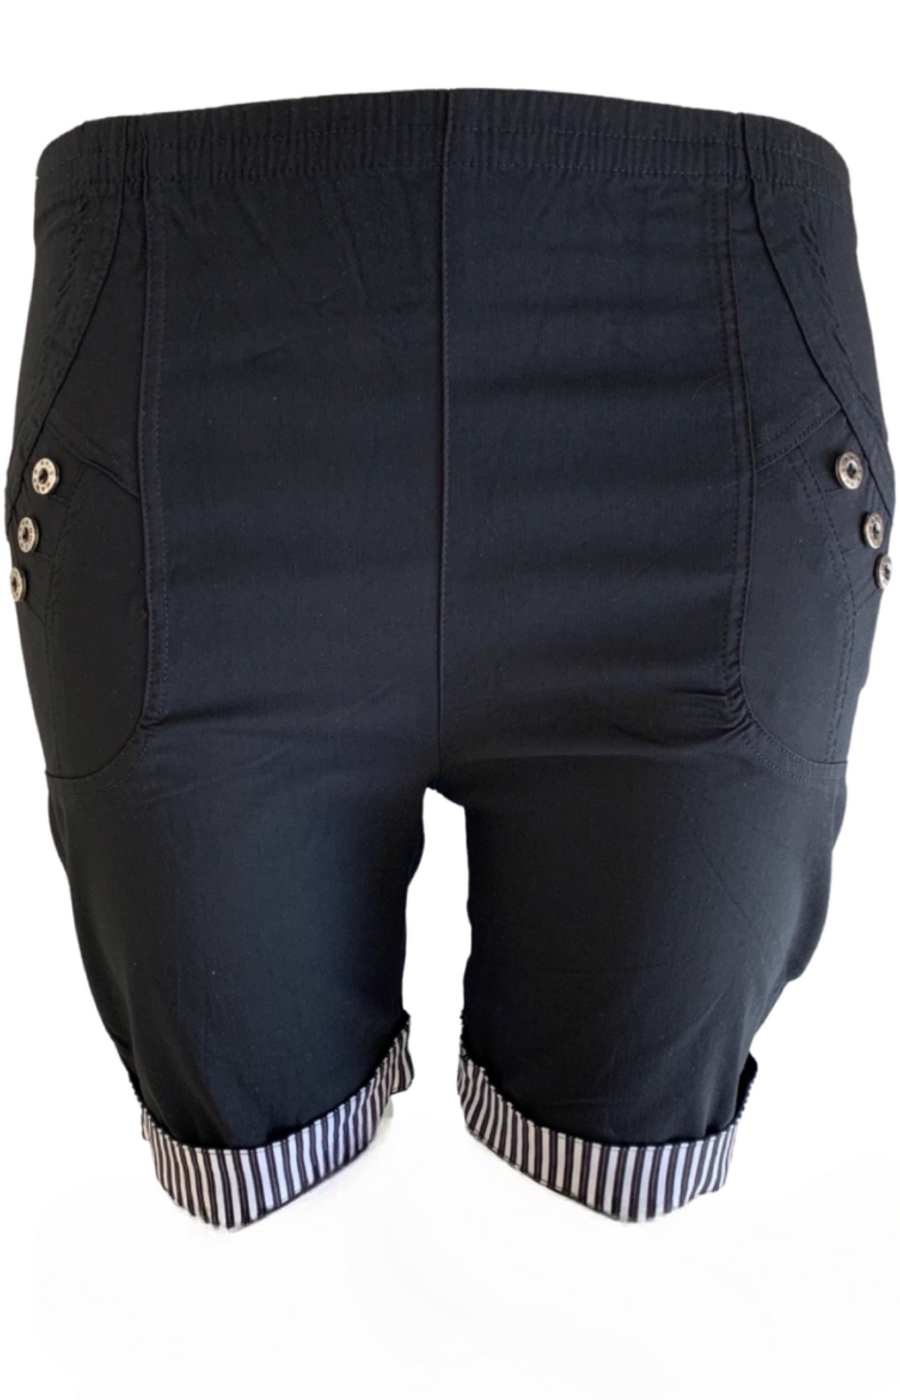 Suzi Striped Shorts in Black